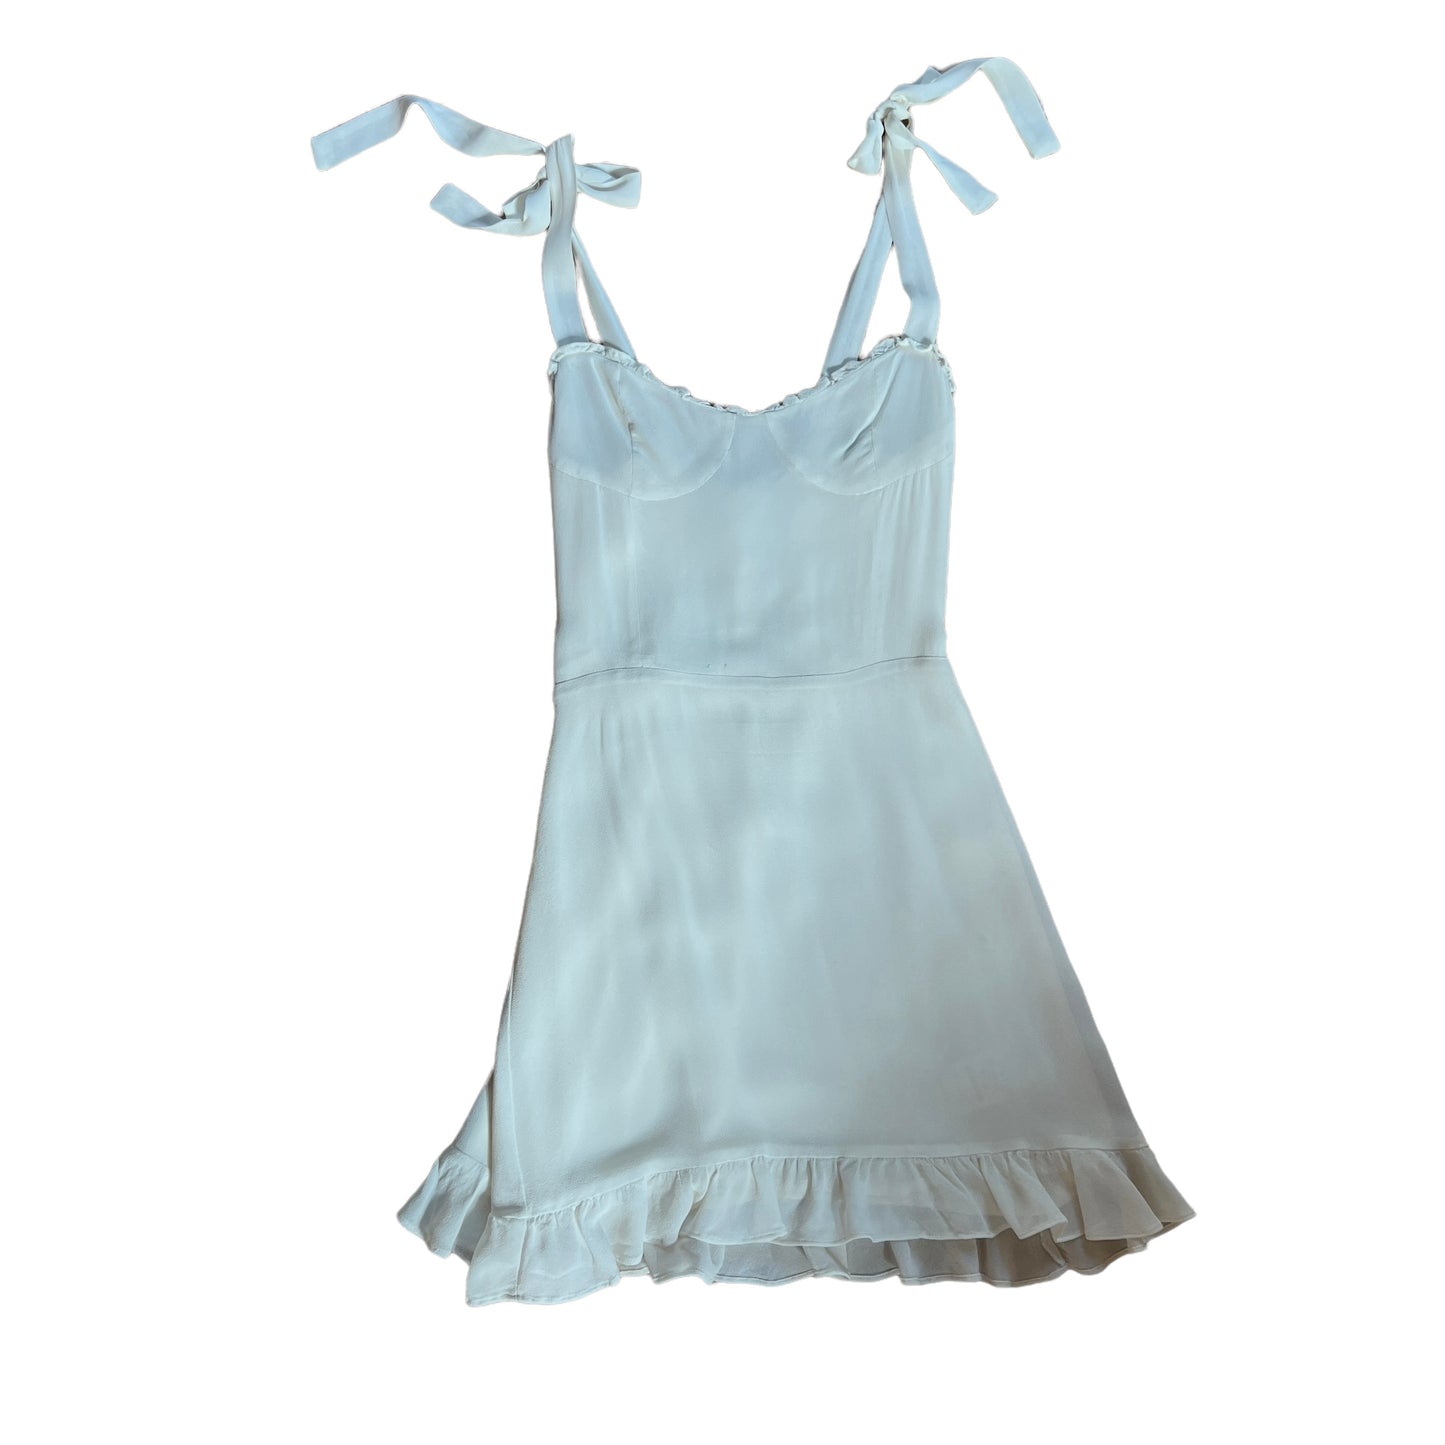 White Mini Dress - 4